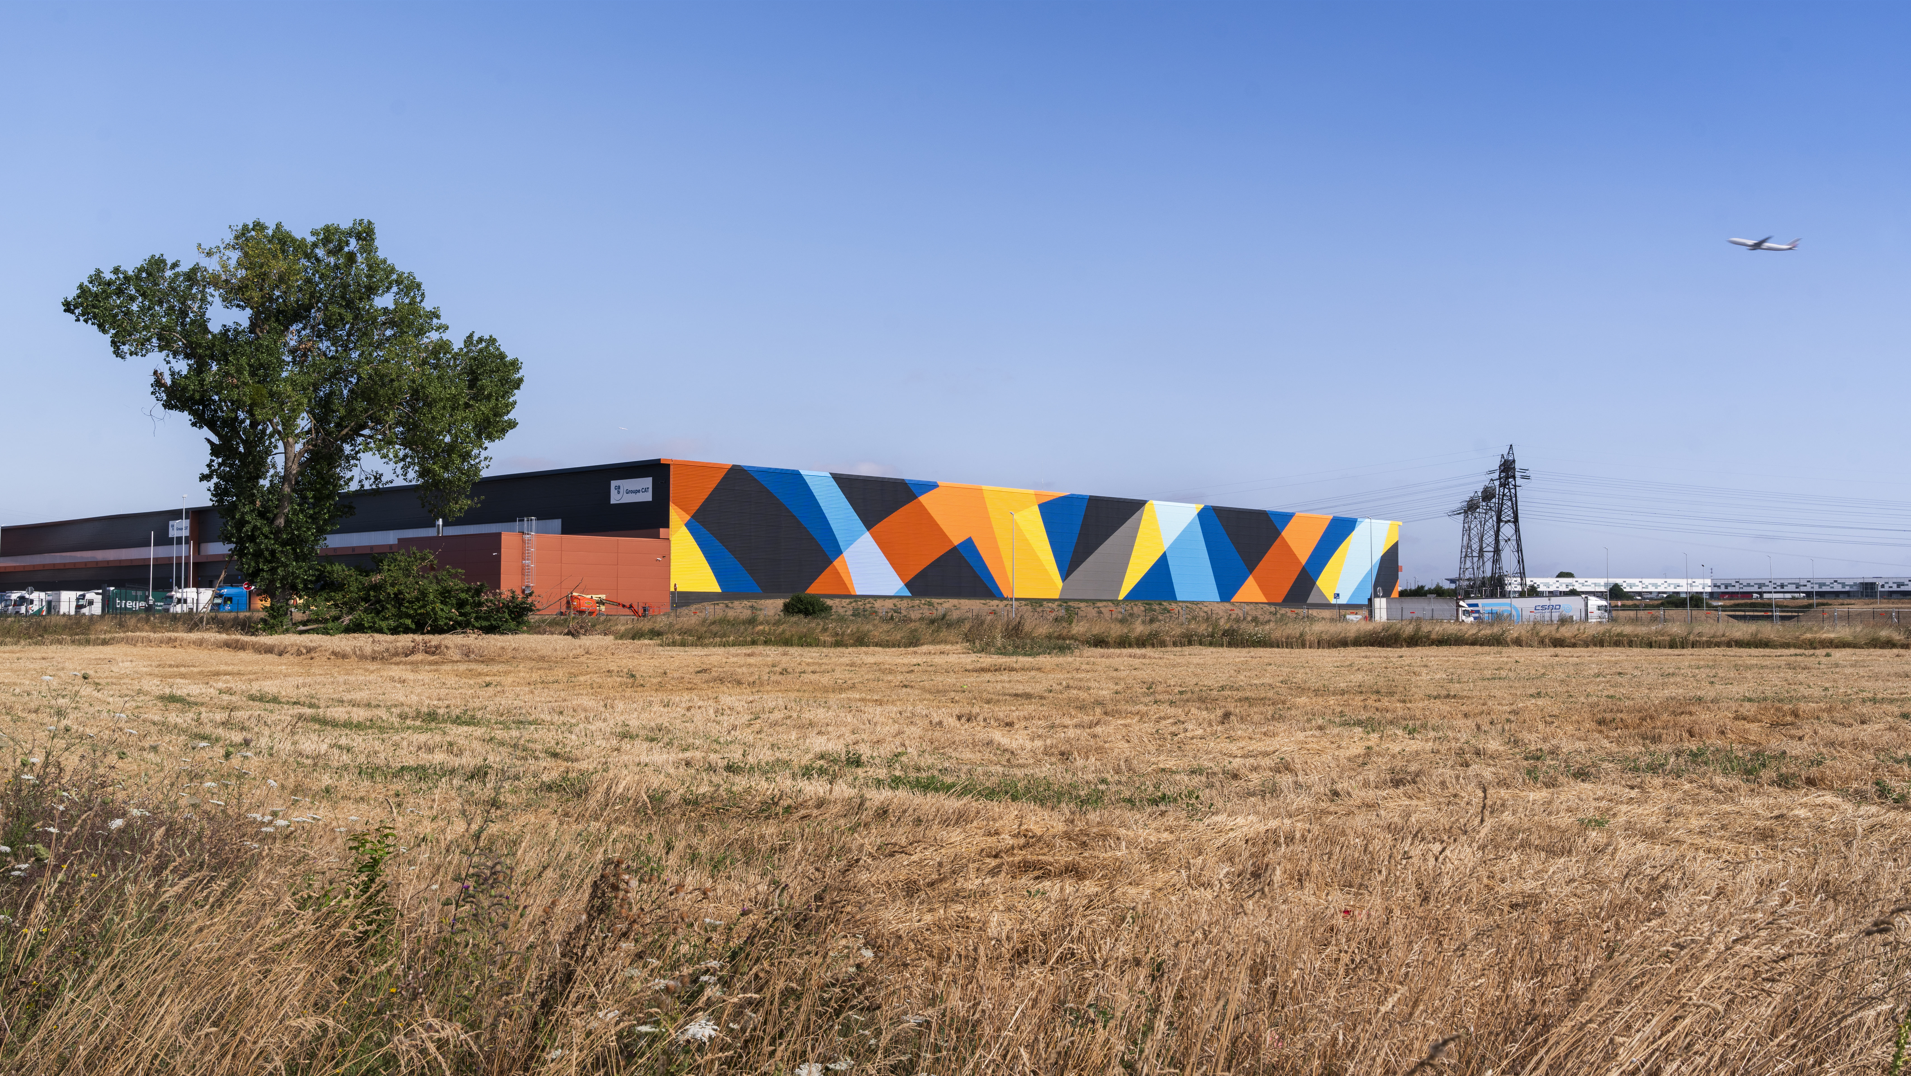 Une façade artistique pour le pôle logistique BARJANE Aerolians Paris : Faire entrer l’art au cœur de la logistique industrielle